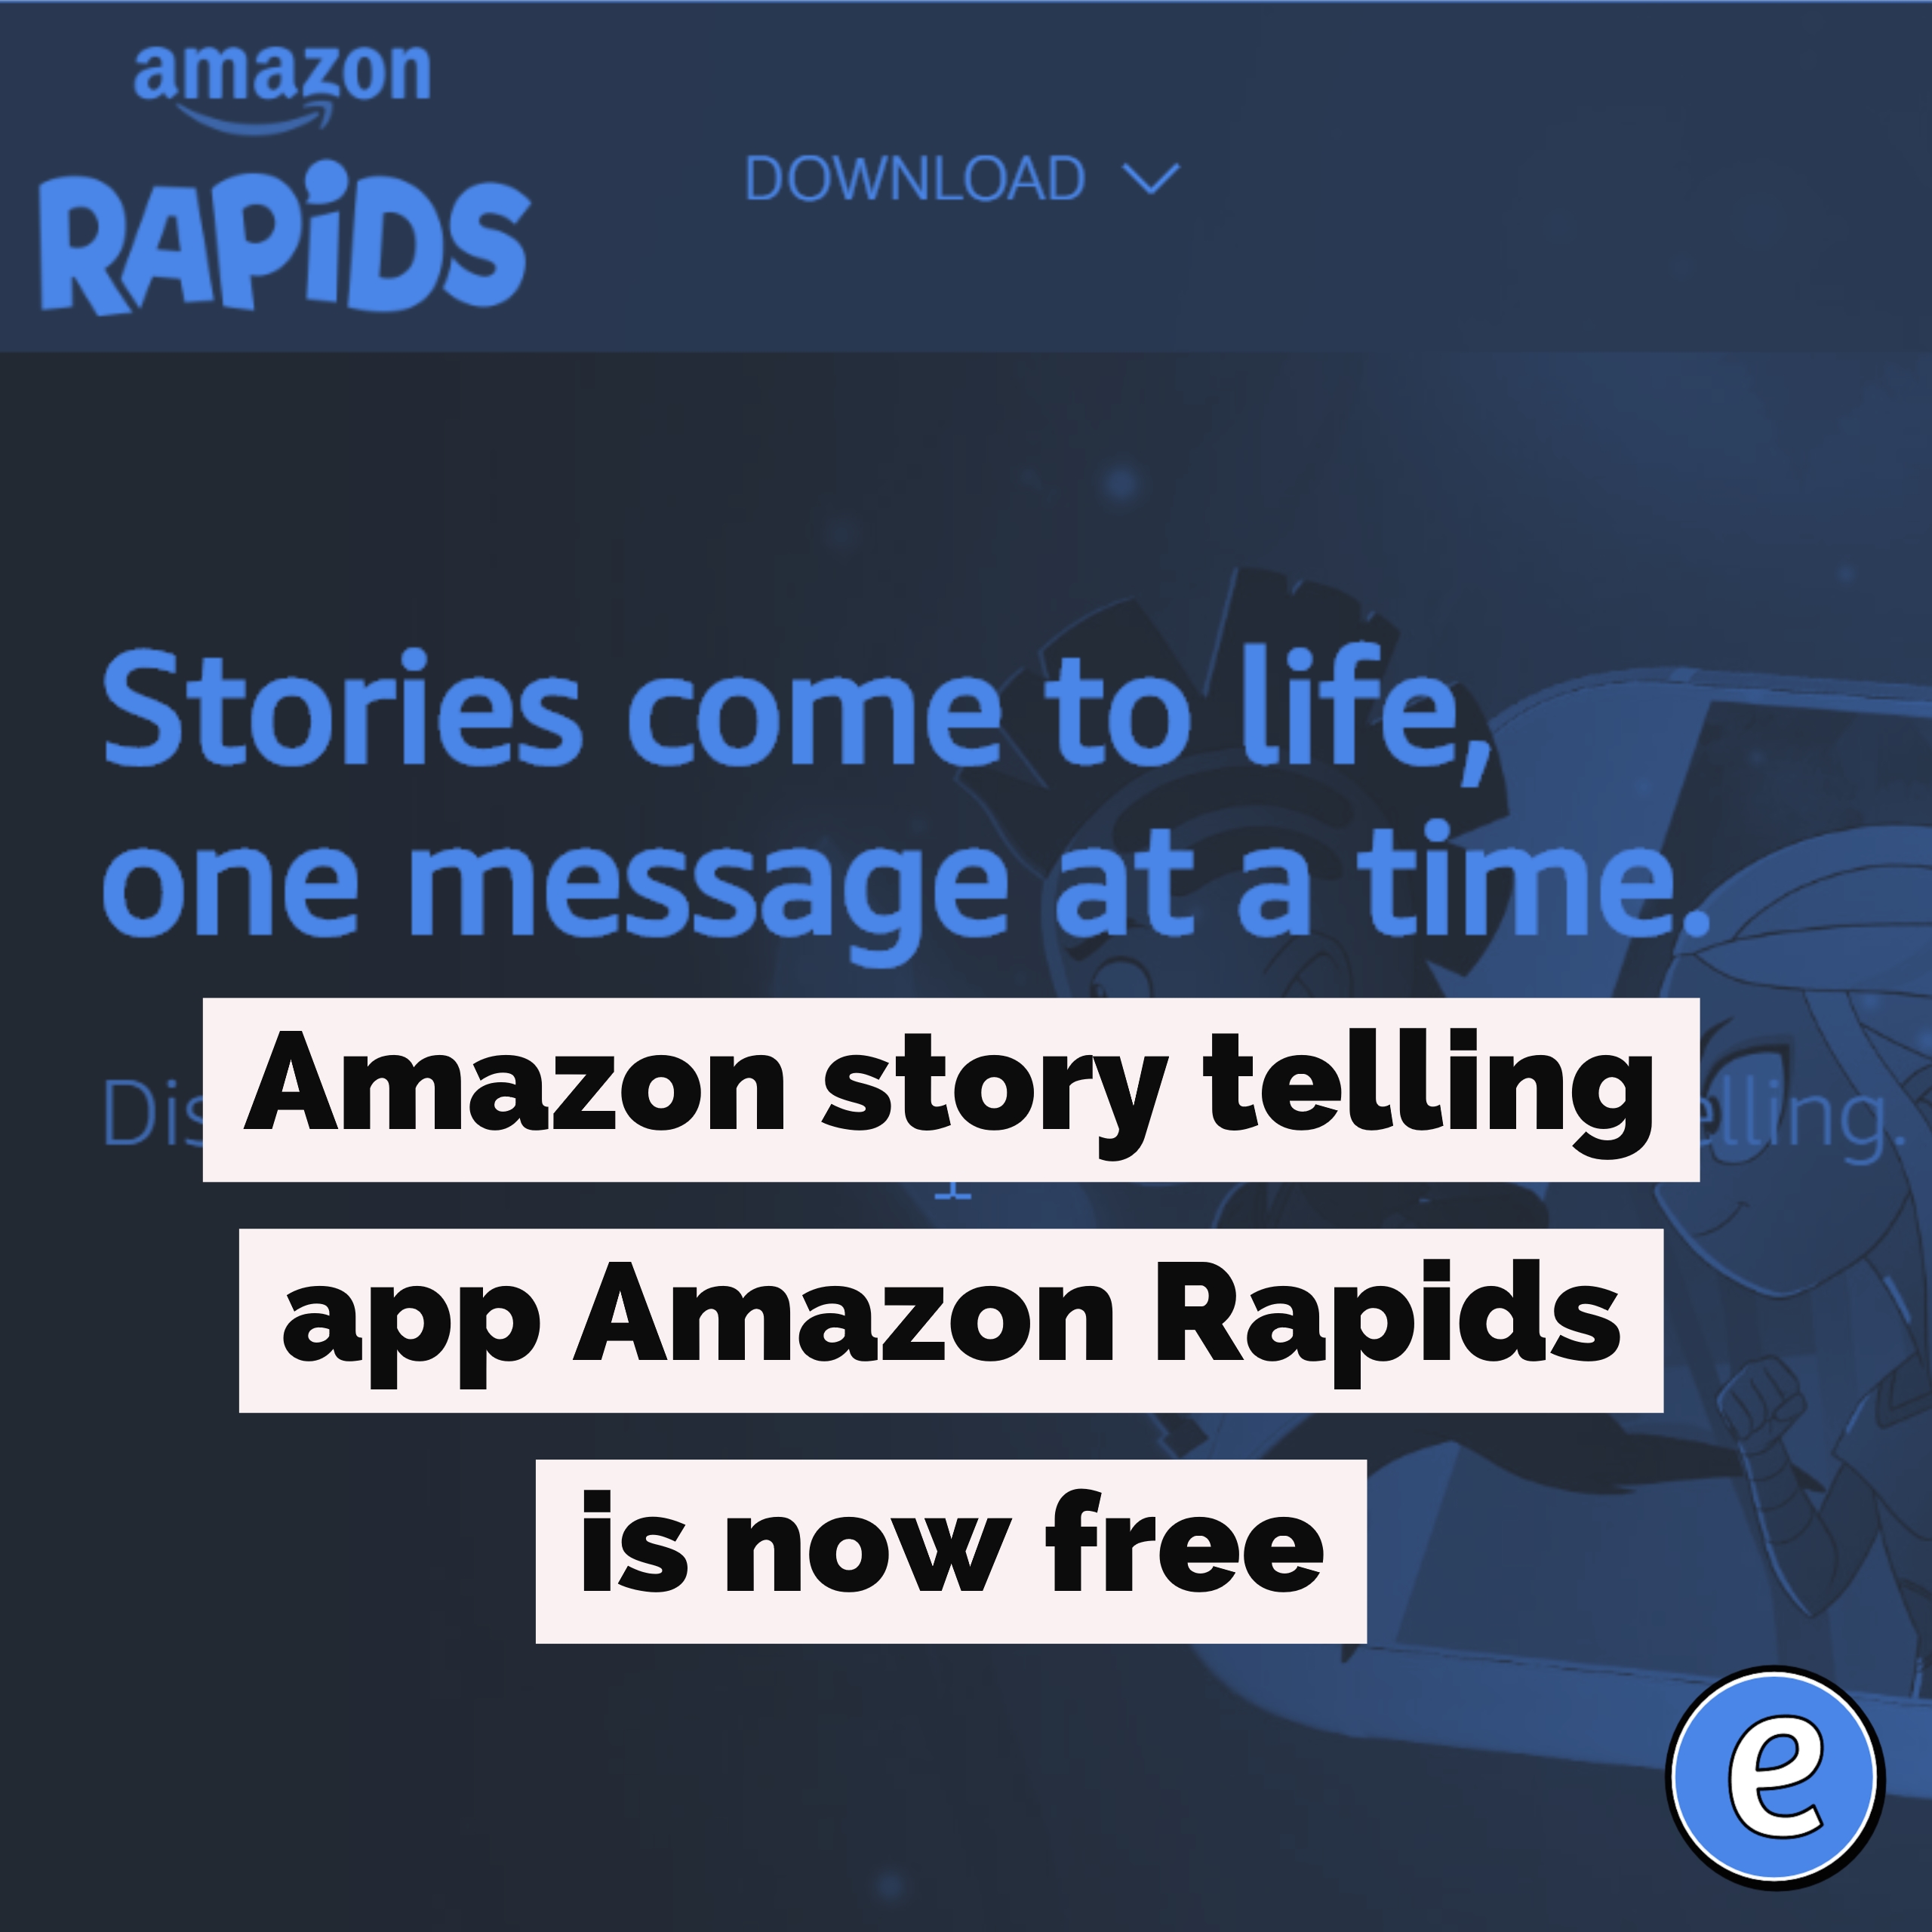 Amazon story telling app Amazon Rapids is now free